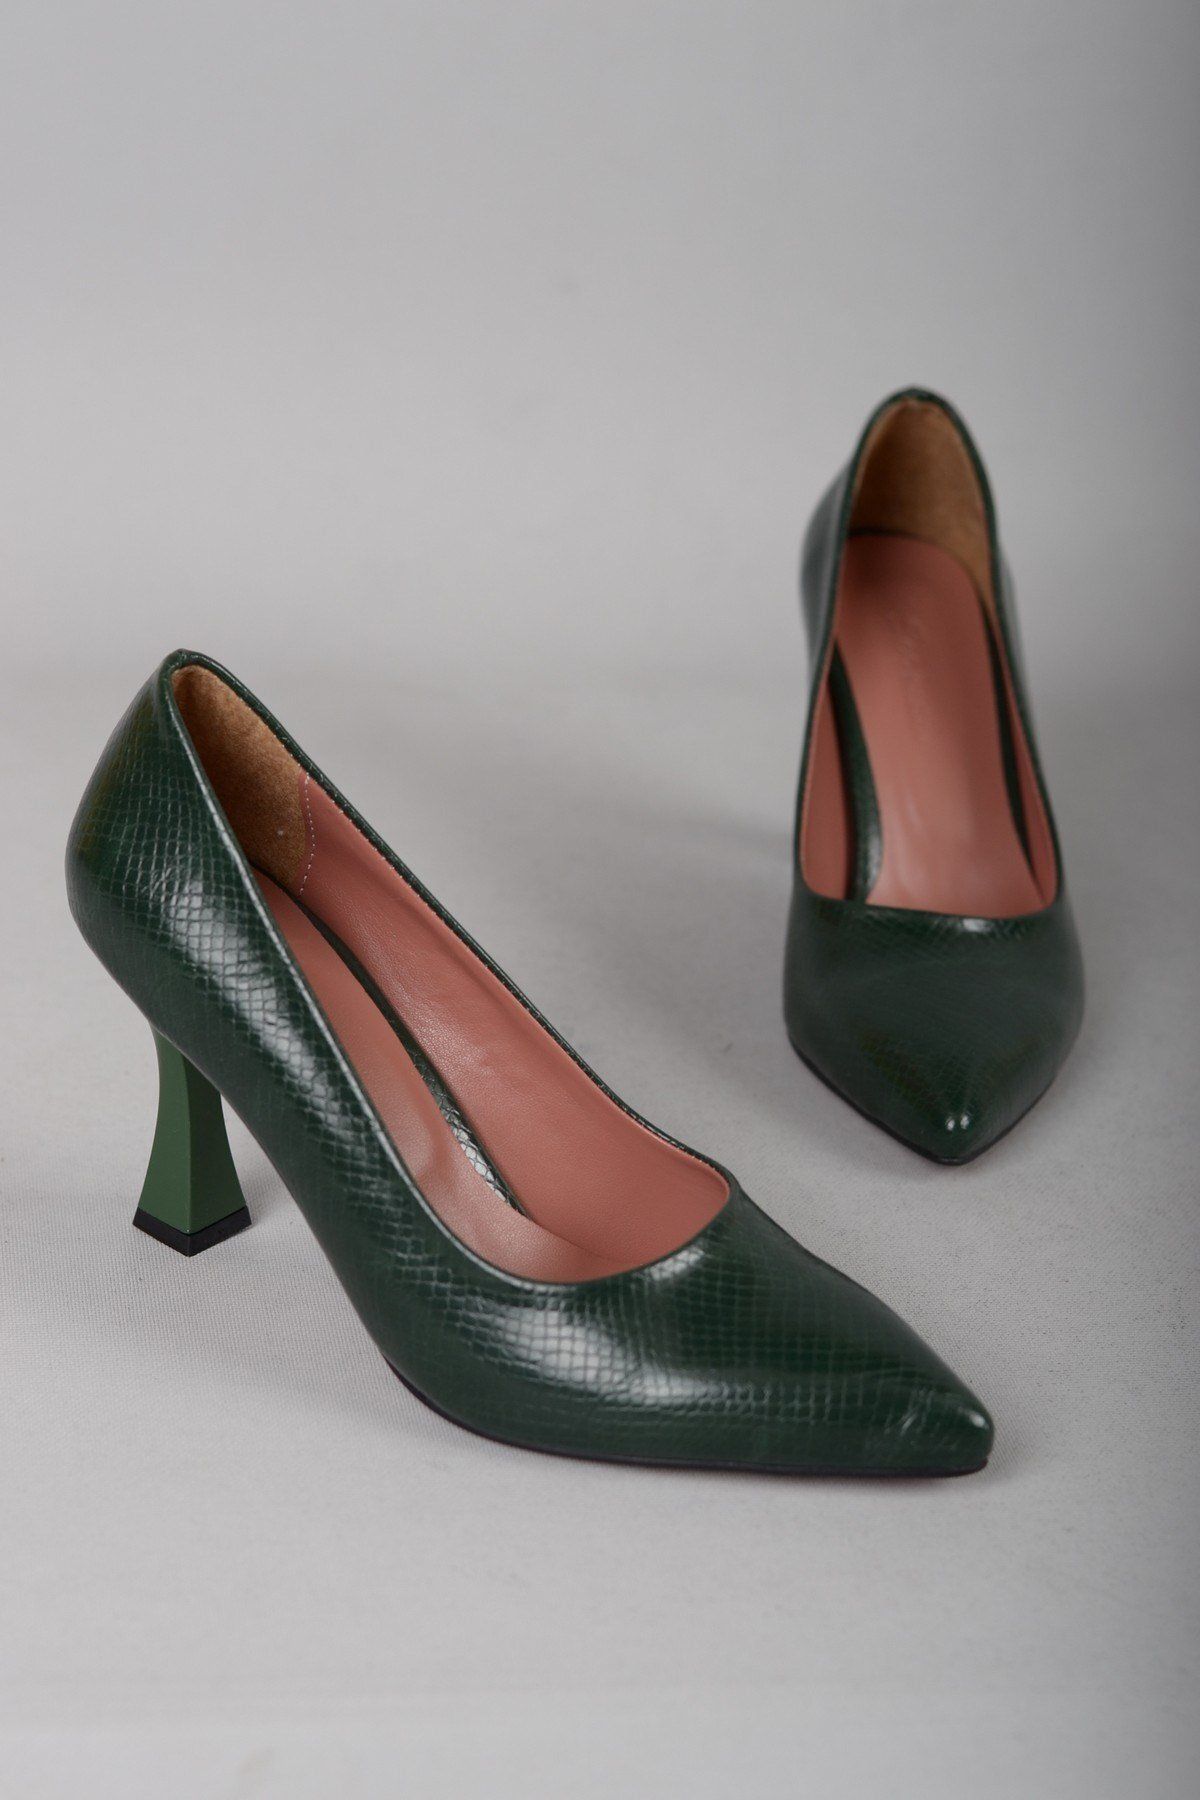 SEÇ KUNDURA Seç 720 Stiletto Topuklu Ayakkabı (9cm) Yeşil Yılan